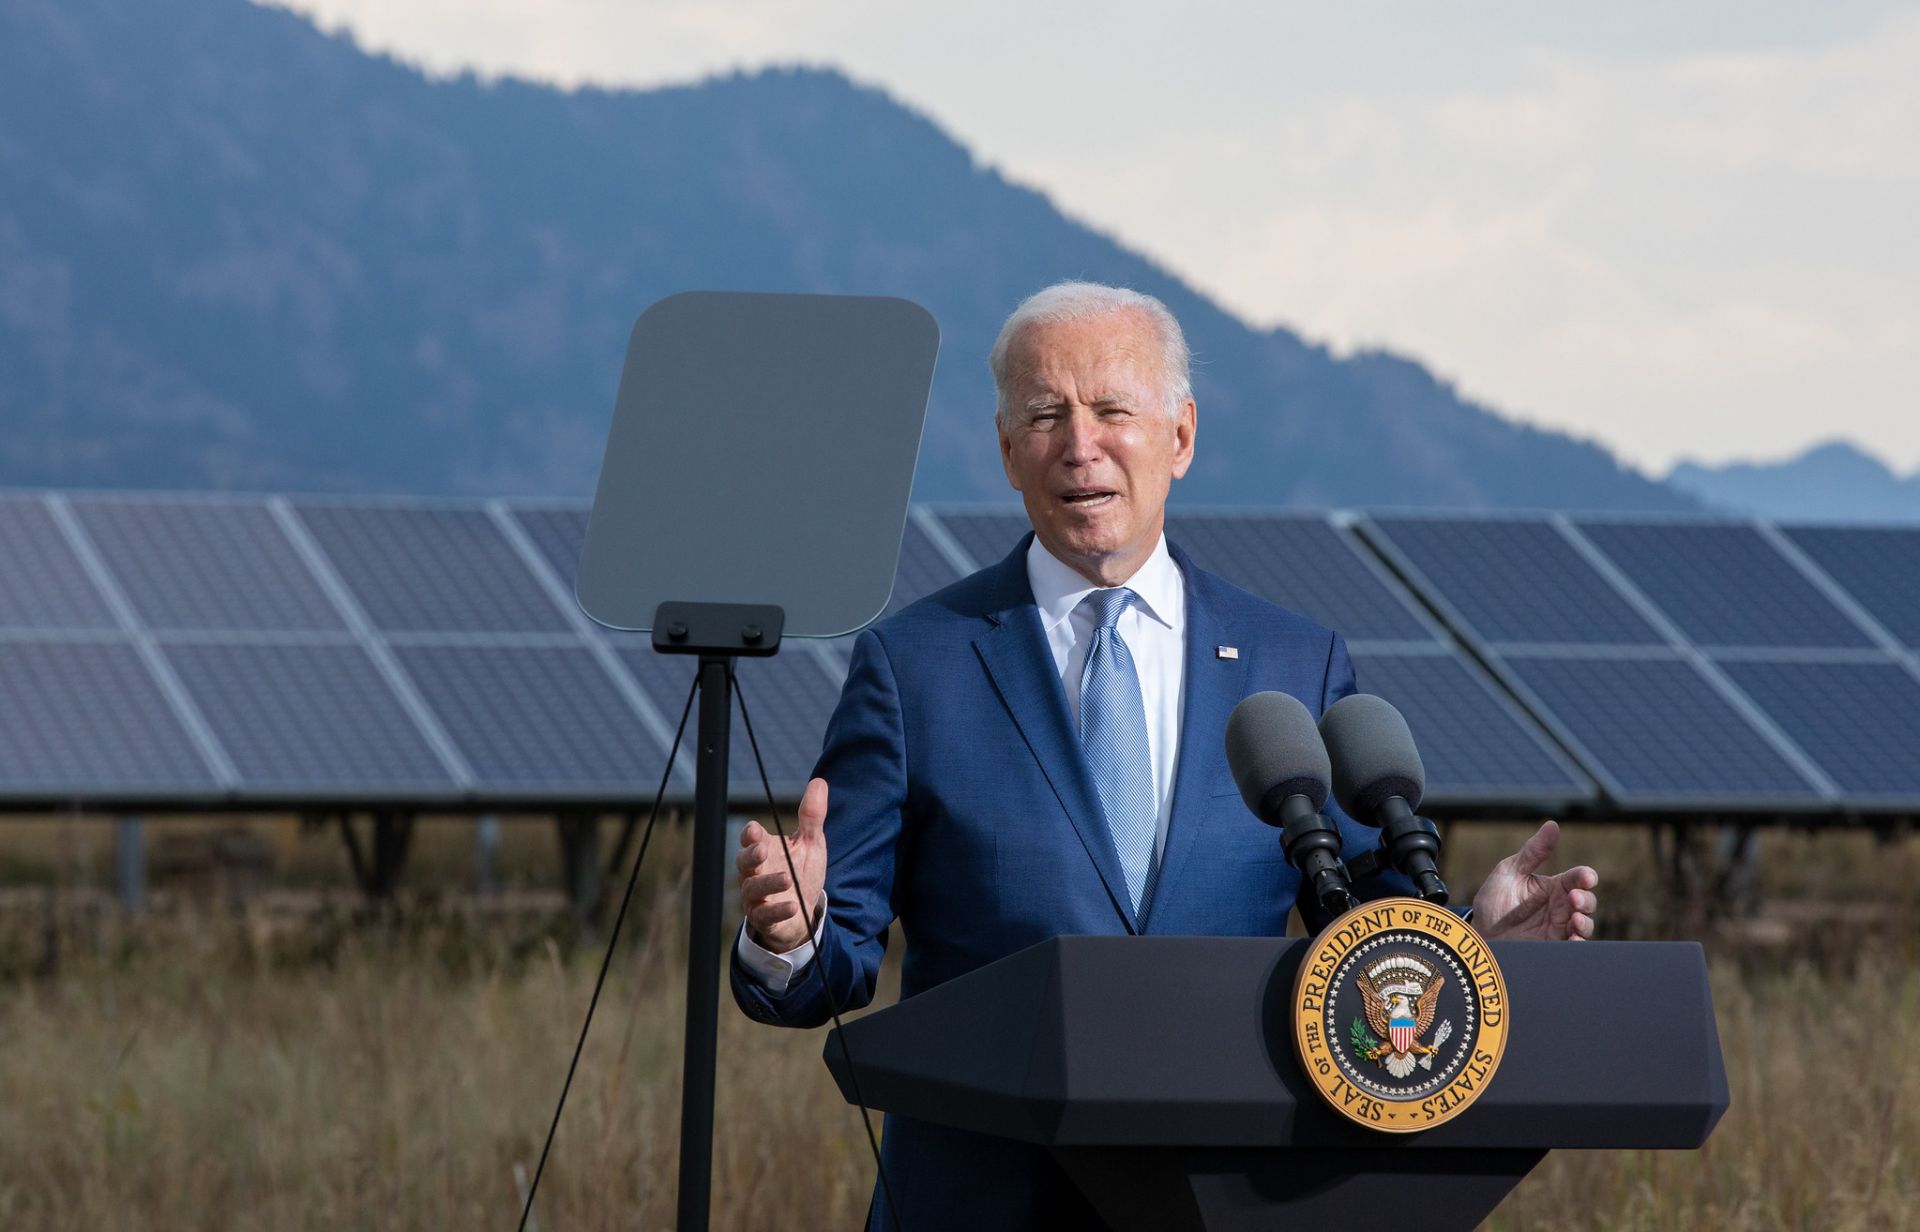 Tổng thống Hoa Kỳ Joe Biden tuyên bố sẽ miễn thuế 24 tháng với các tấm pin năng lượng mặt trời nhập khẩu từ 4 nước Đông Nam Á, trong đó có Việt Nam